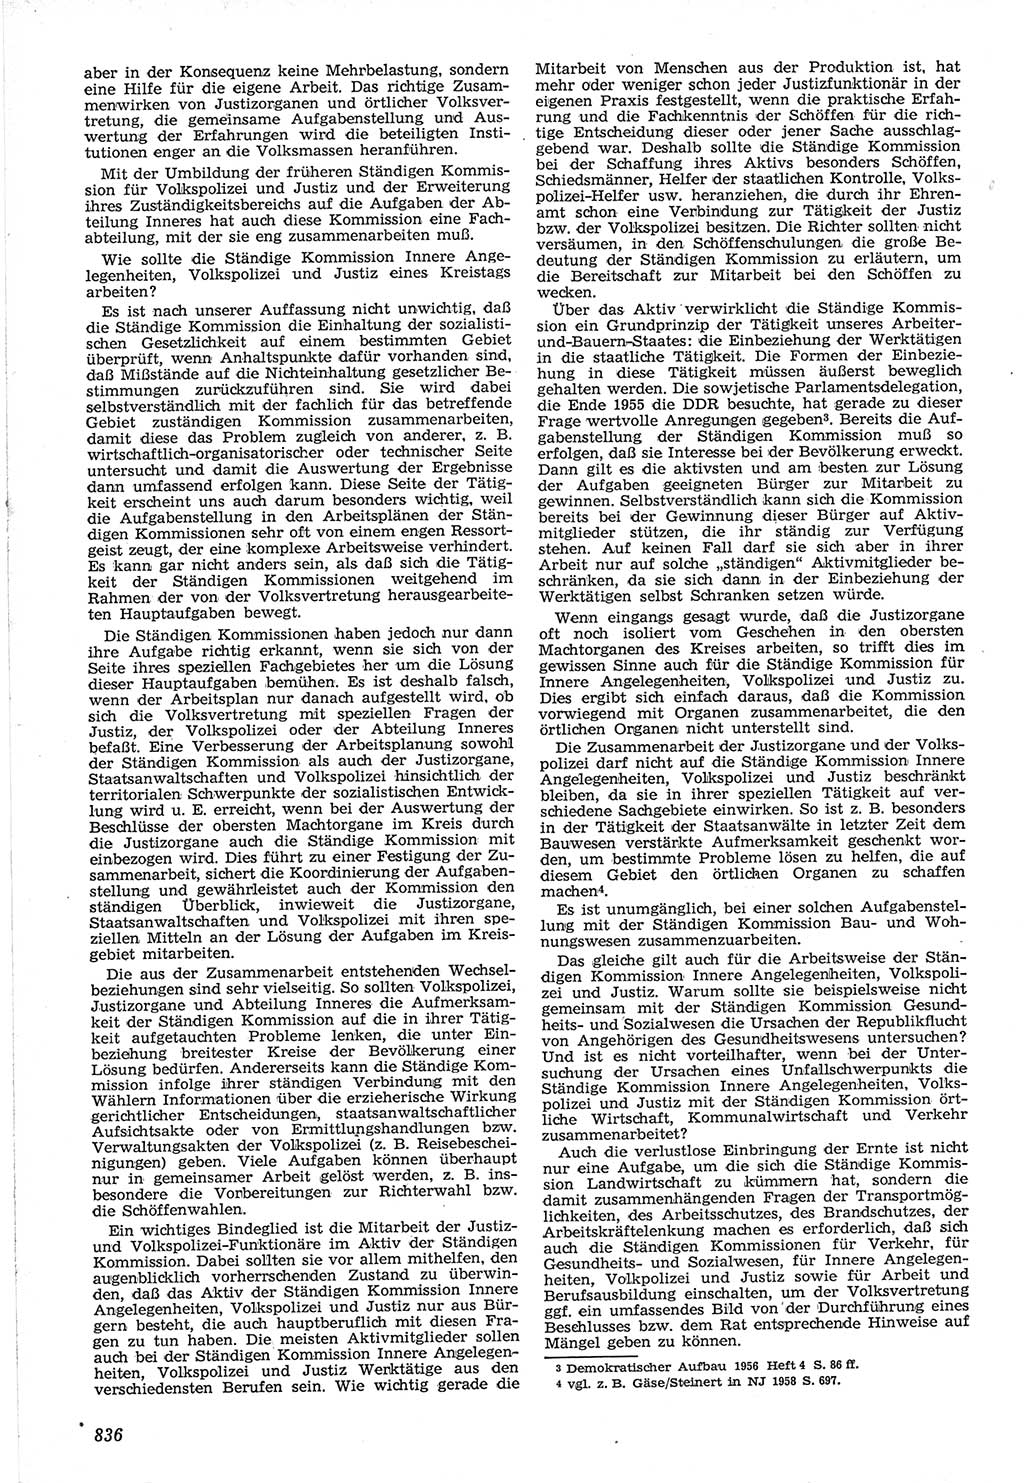 Neue Justiz (NJ), Zeitschrift für Recht und Rechtswissenschaft [Deutsche Demokratische Republik (DDR)], 12. Jahrgang 1958, Seite 836 (NJ DDR 1958, S. 836)